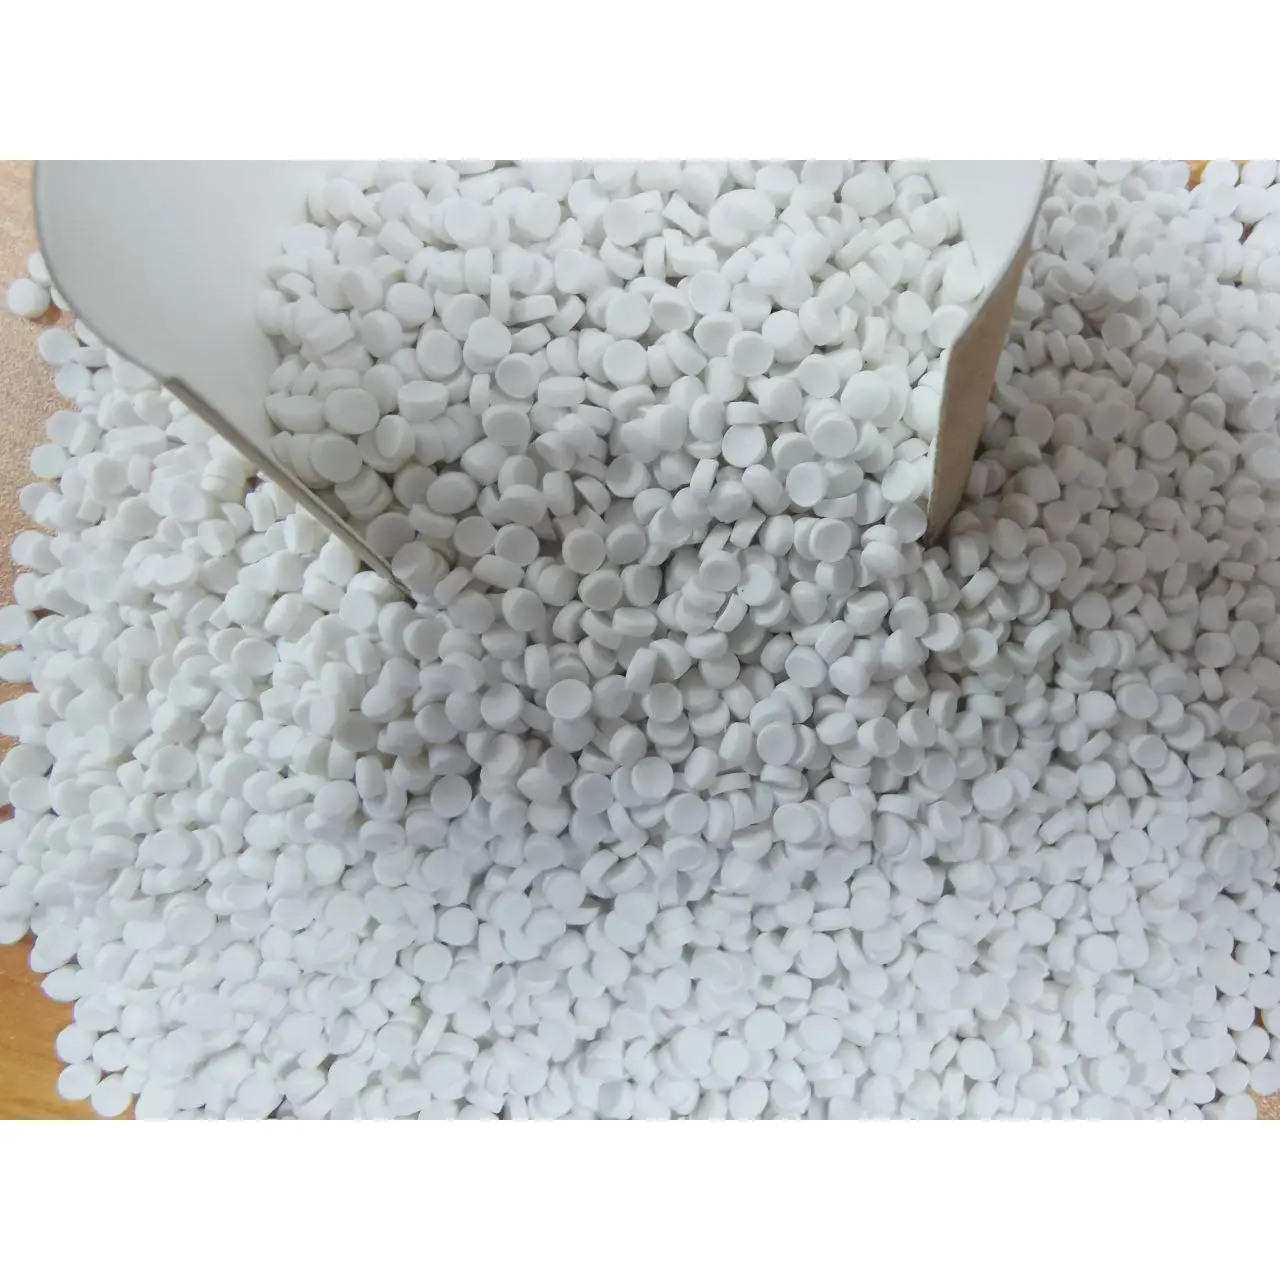 Lot principal de remplissage de Carbonate de Calcium de qualité supérieure pour la fabrication de Jerry Can, emballage de sac en forme de pastilles